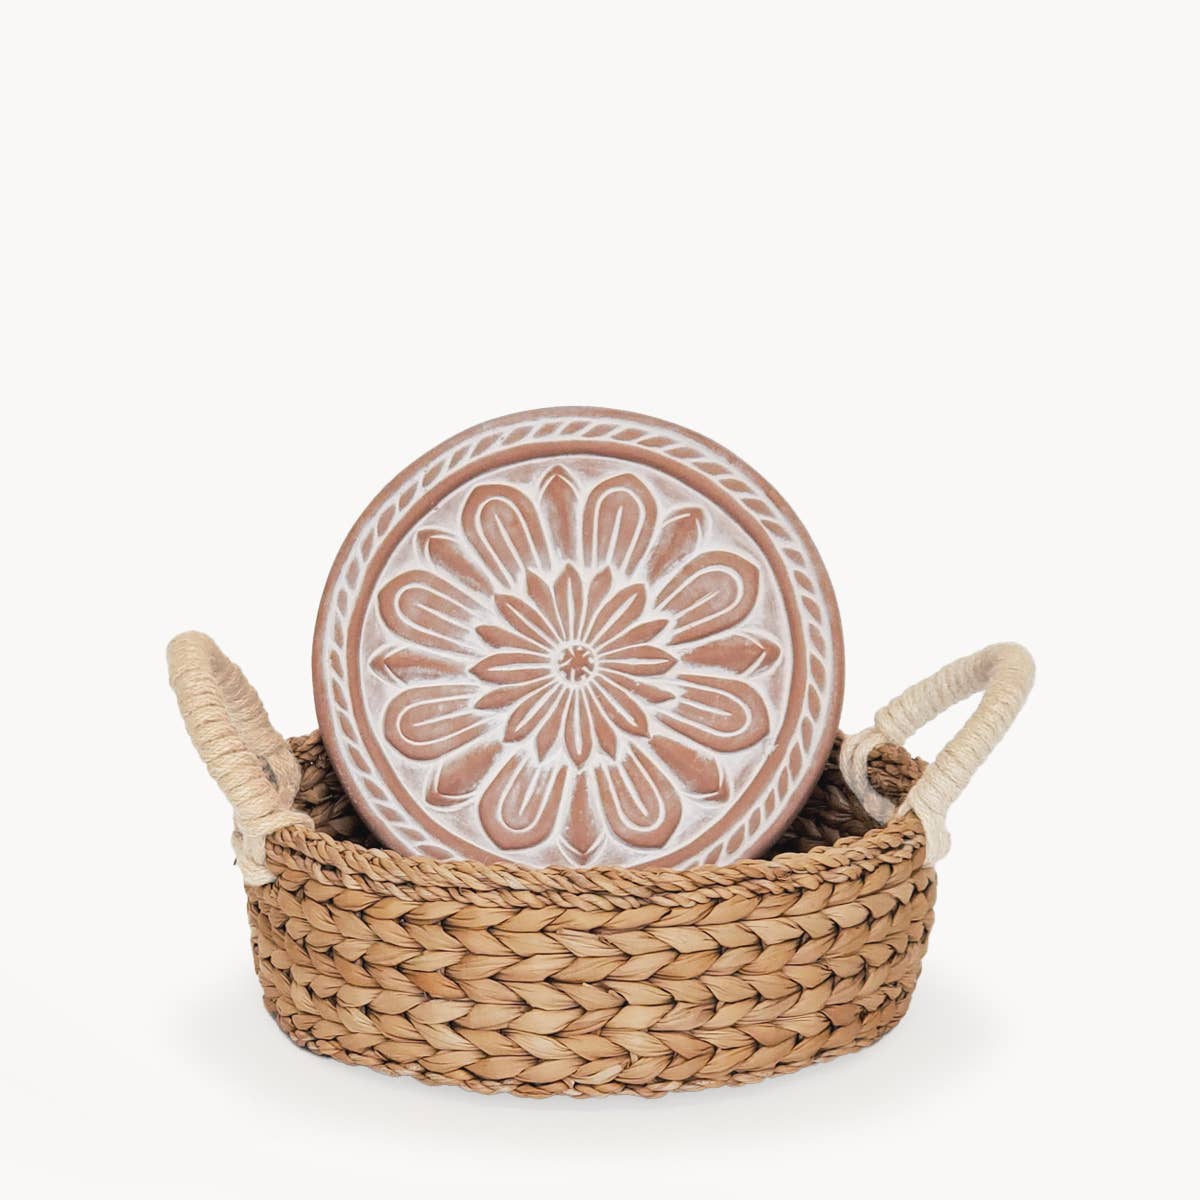 Handmade Bread Warmer & Wicker Basket - Vintage flower